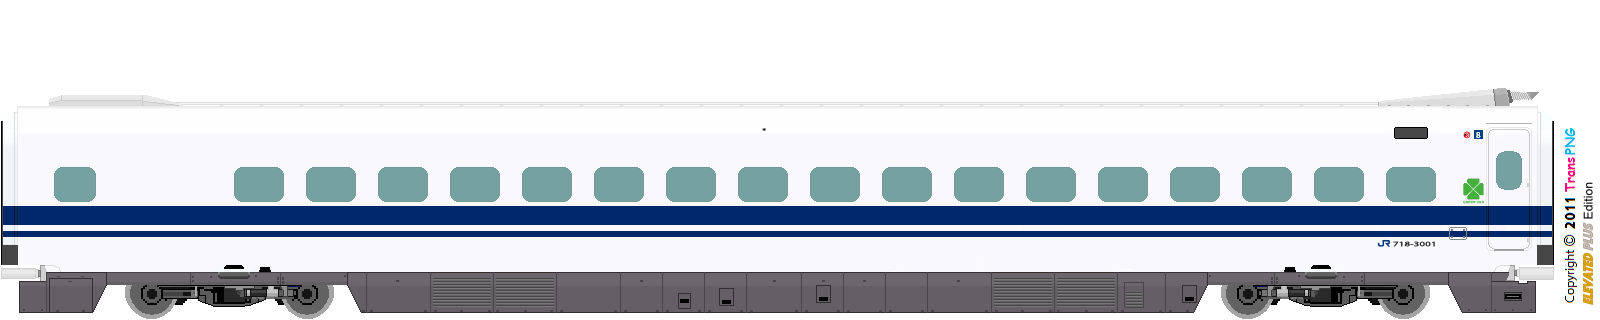 9012 - [9012] West Japan Railway 52287845984_5c8c8c23c1_o